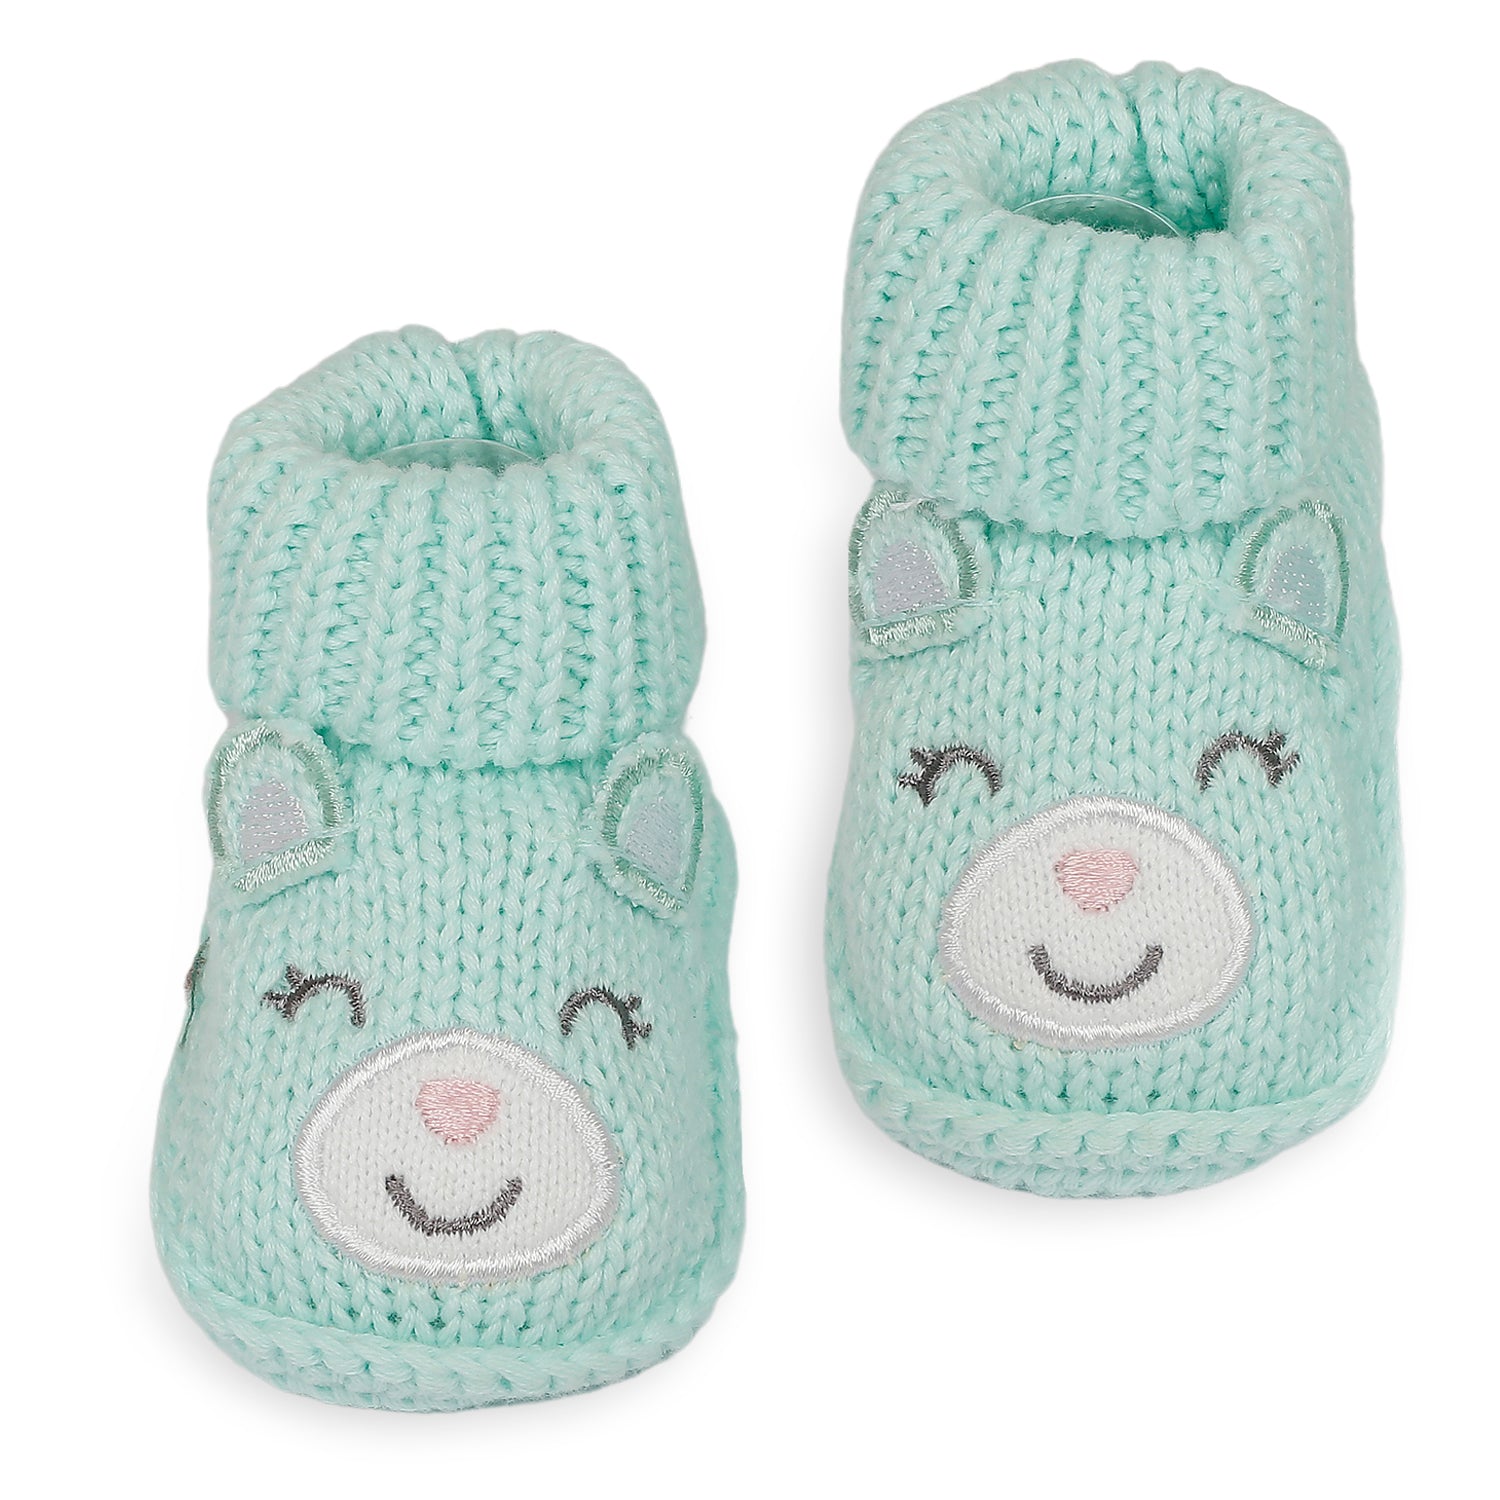 Blushing Newborn Crochet Socks Booties - Mint Green